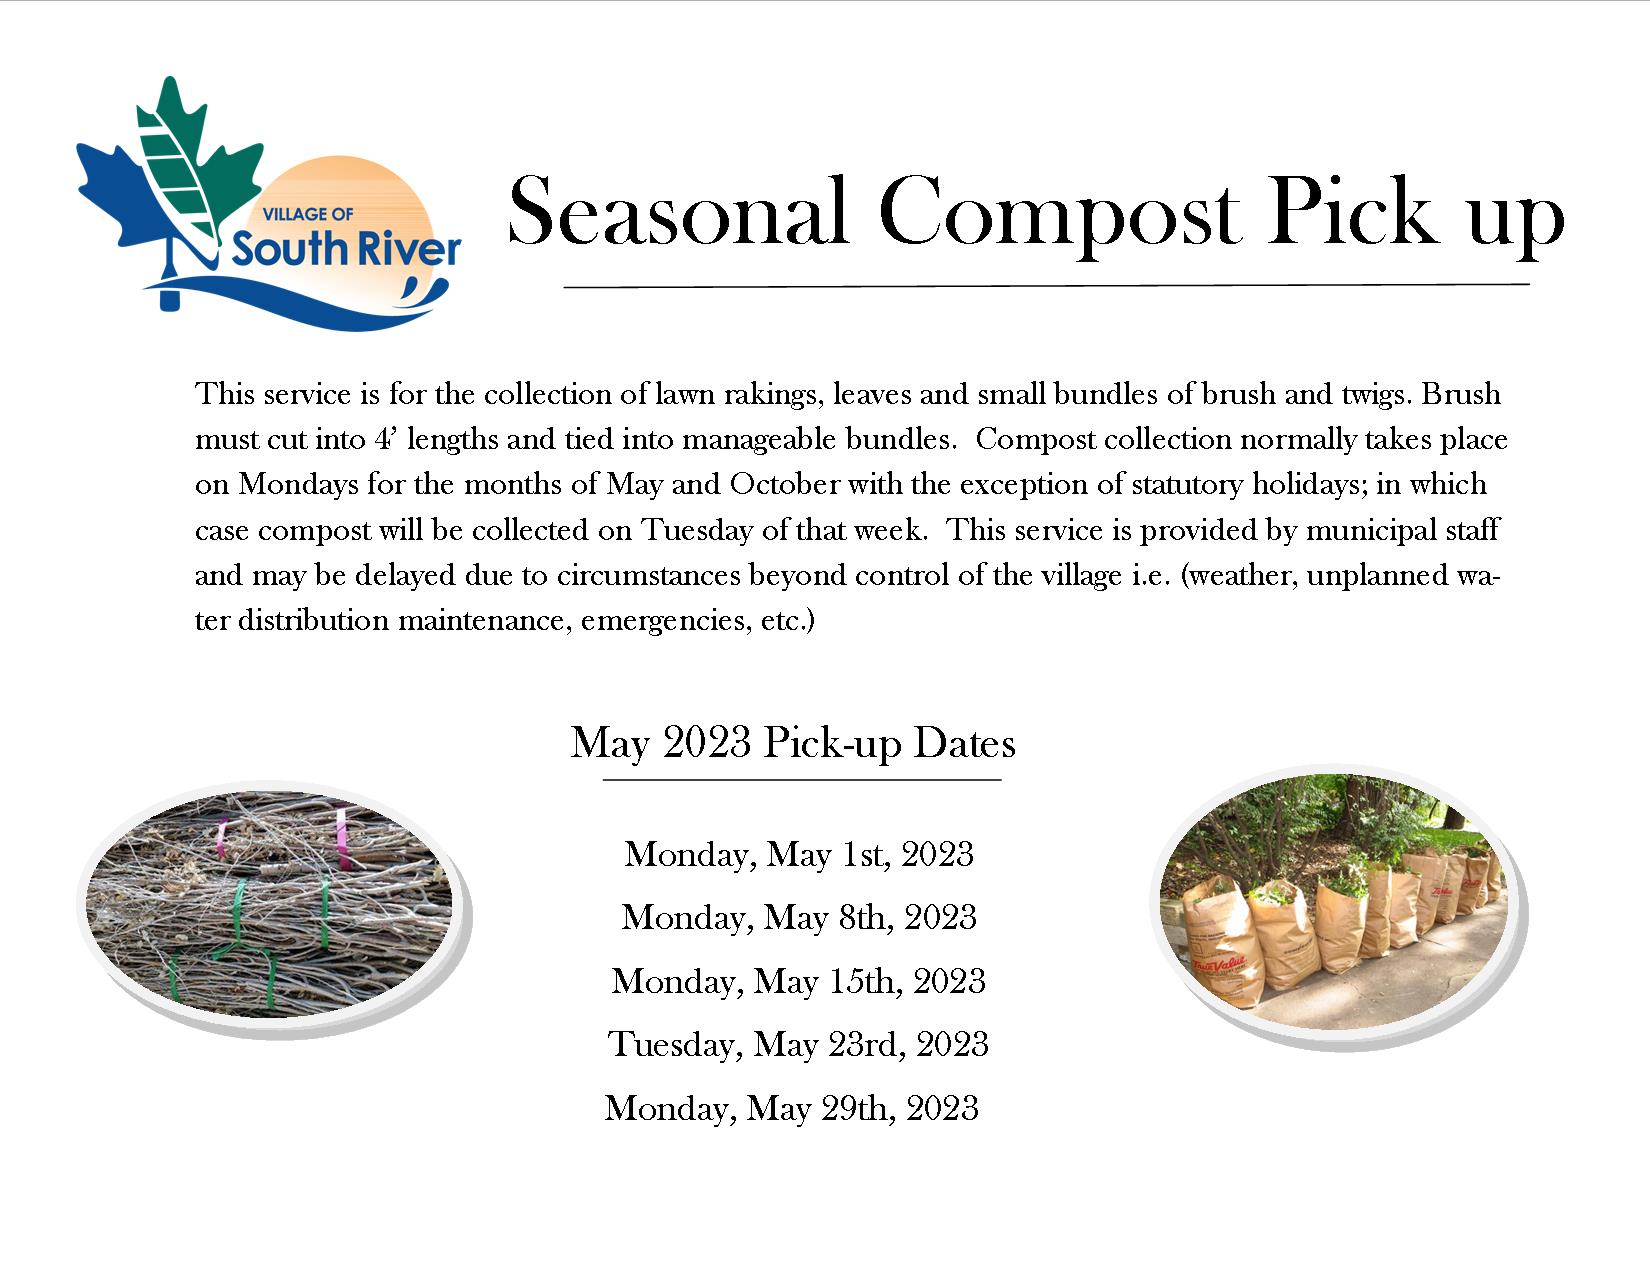 Seasonal Compost pick up may 2023